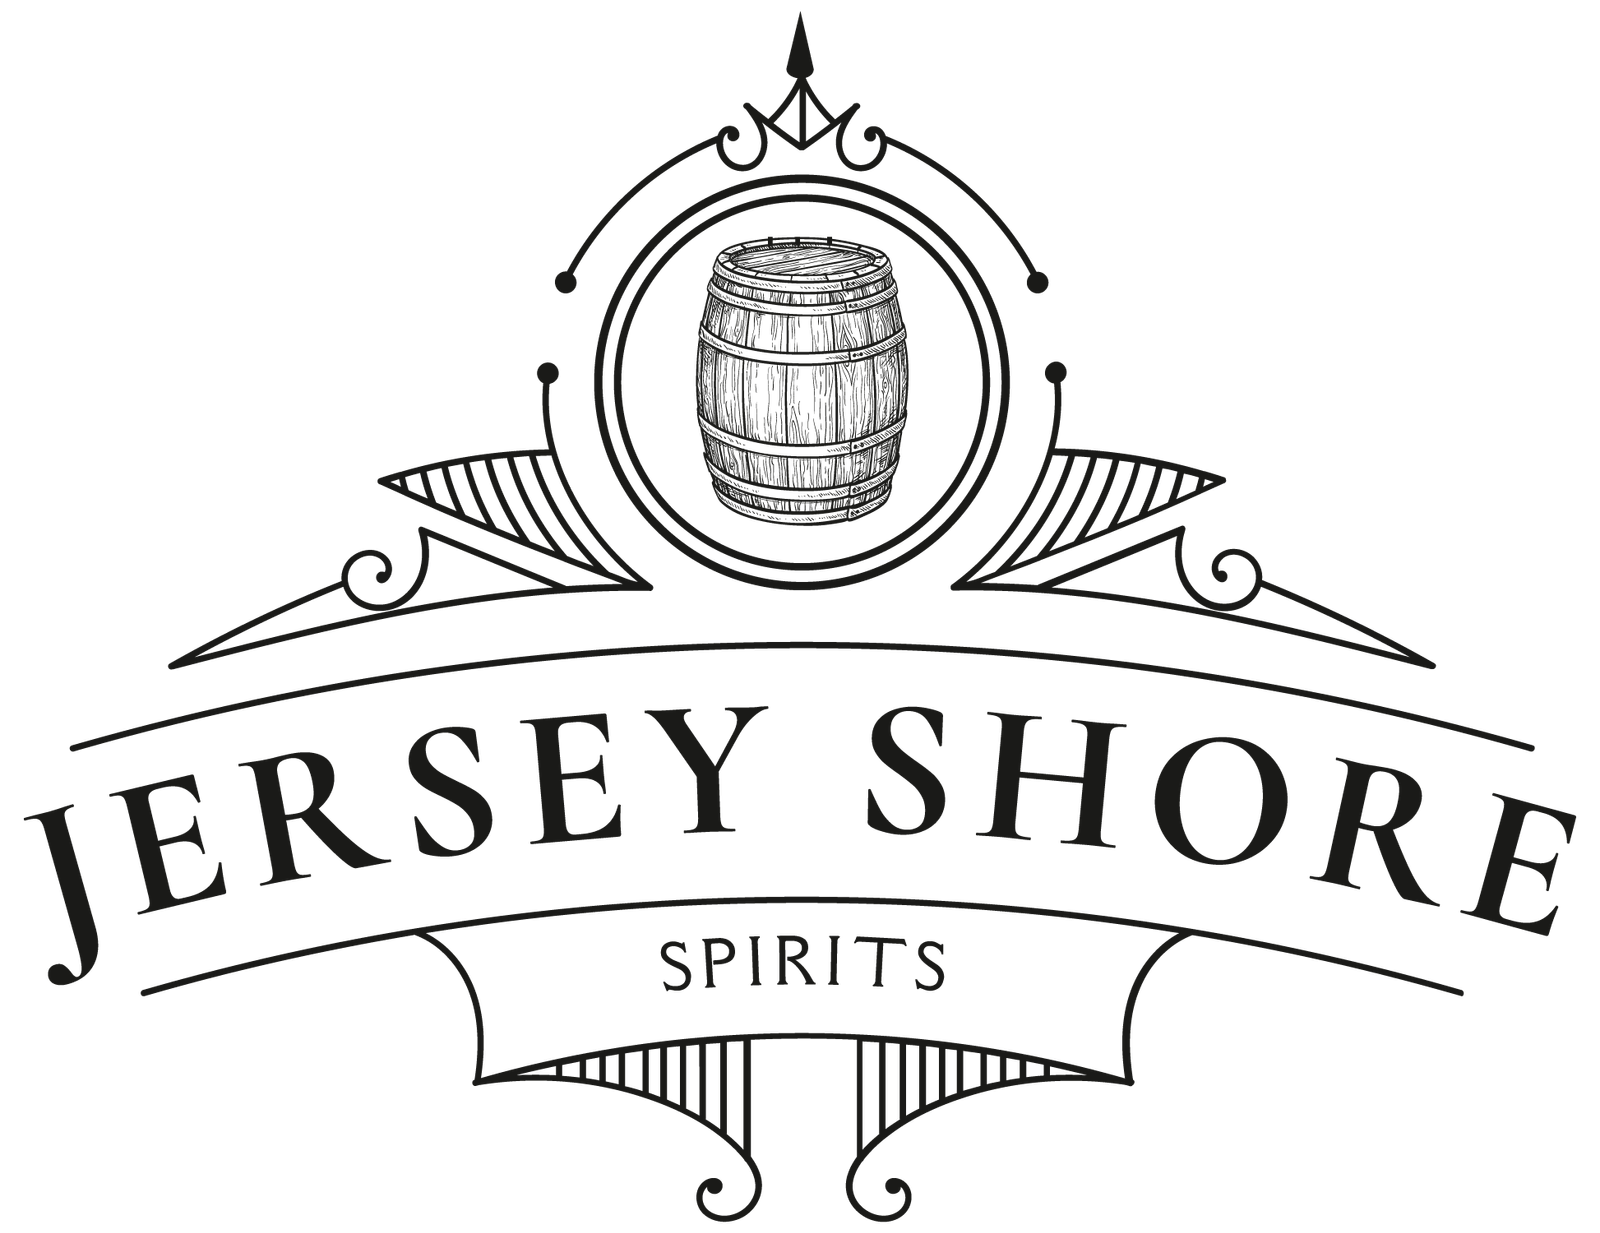 Jersey Shore Spirits